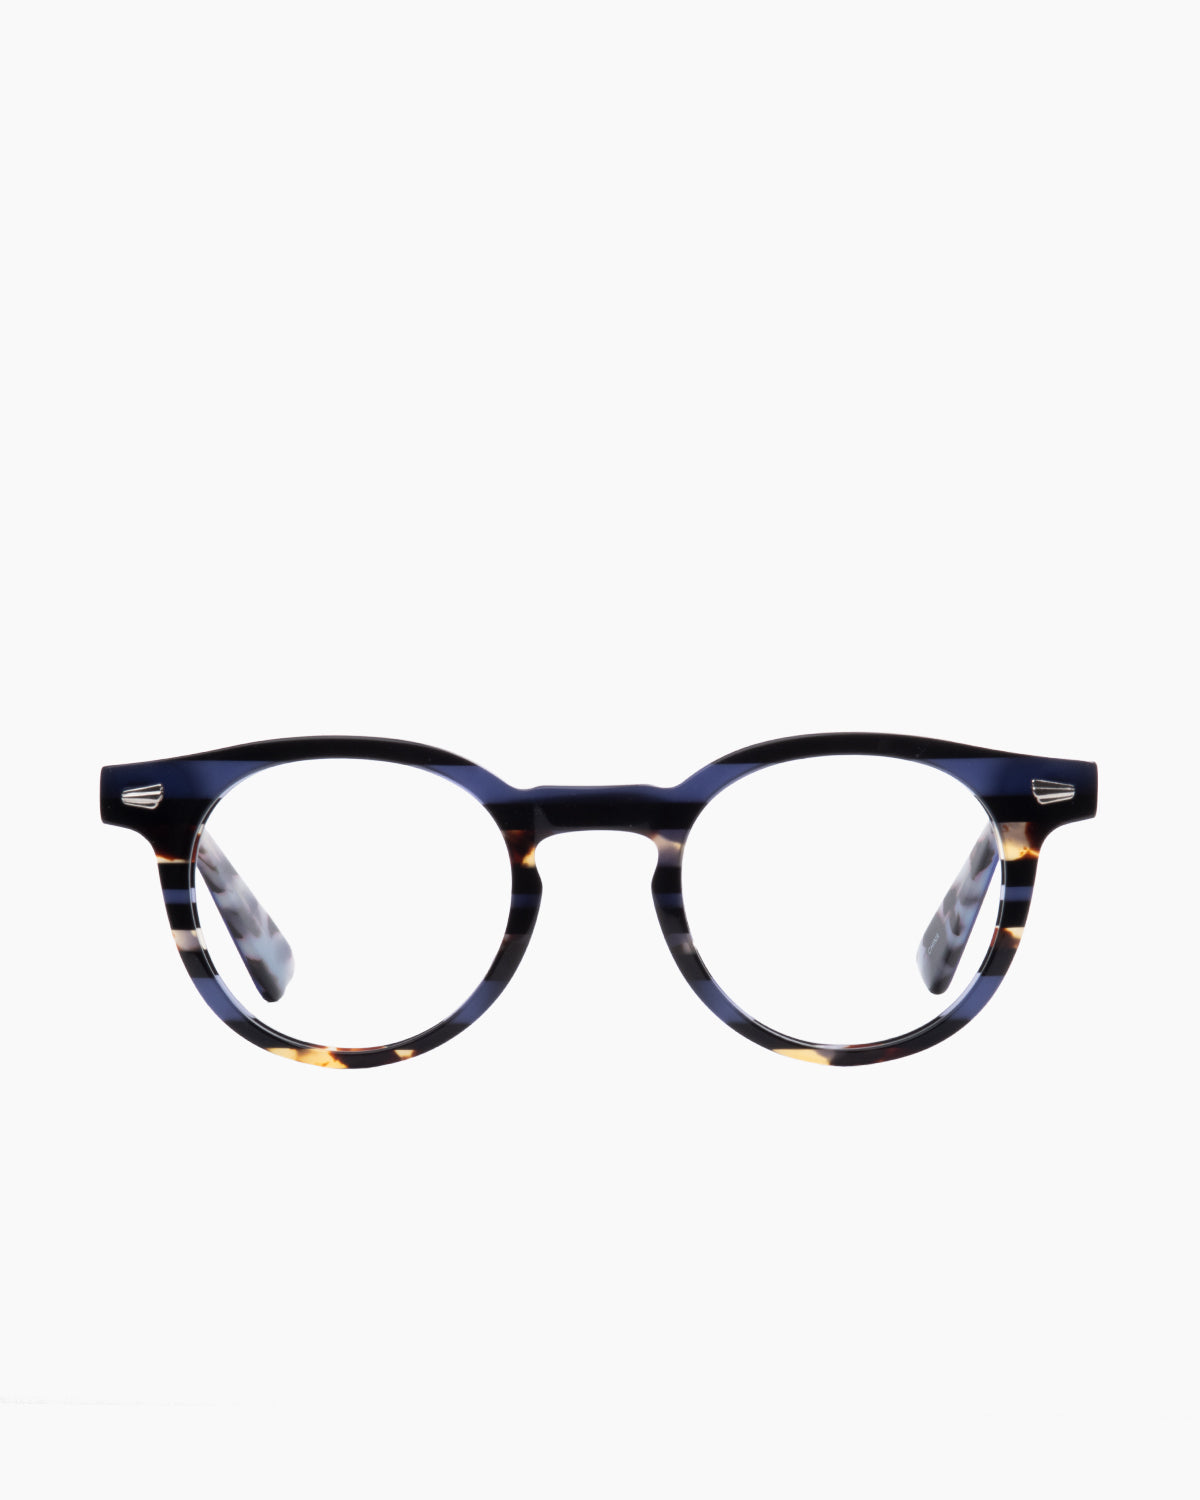 Evolve - drew - 280 | Bar à lunettes:  Marie-Sophie Dion